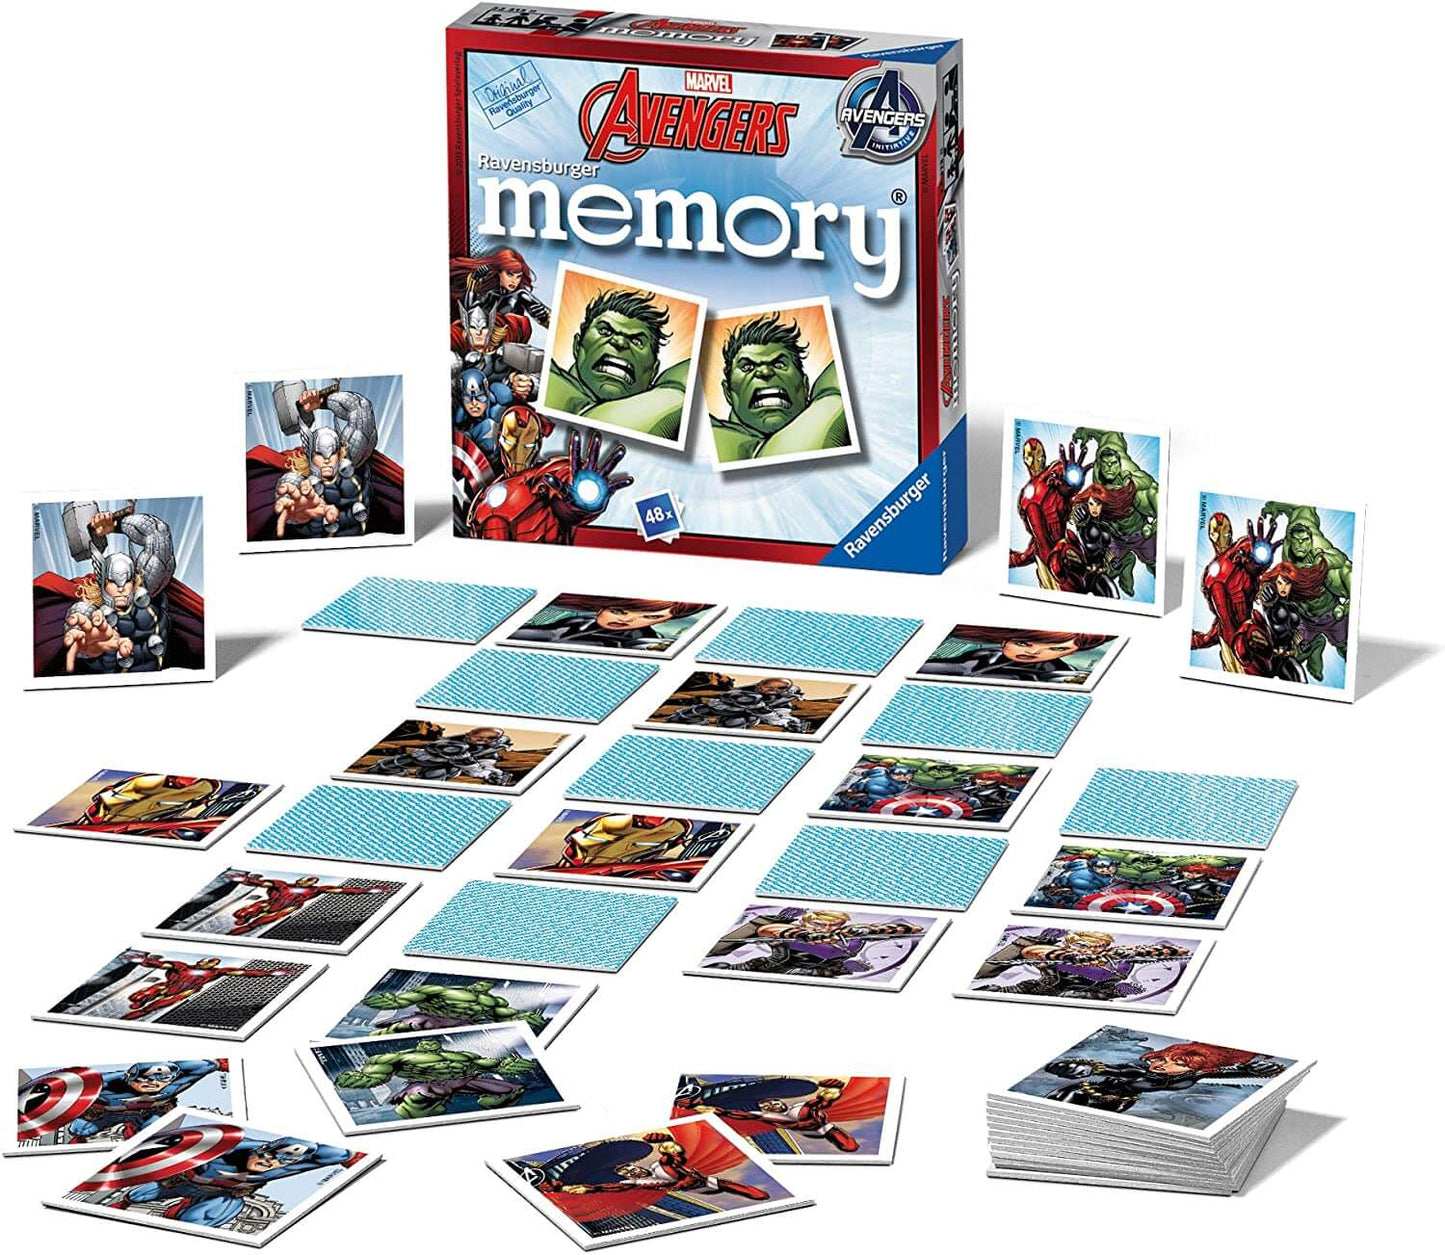 Marvel Avengers Mini Memory Game - Ravensburger